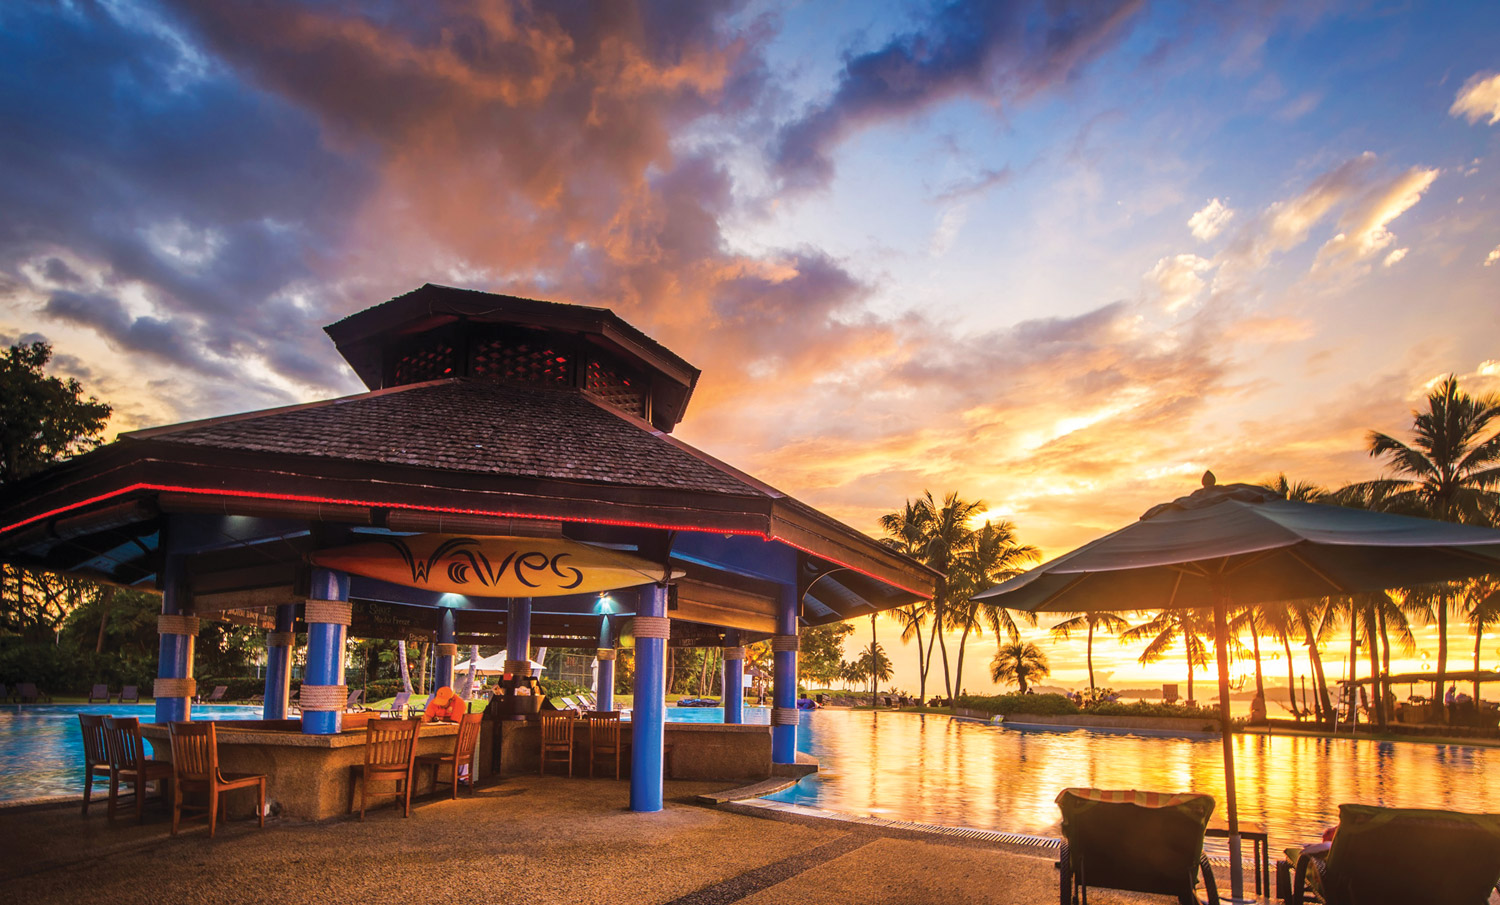 The Magellan Sutera Resort: Enjoy the sunset view